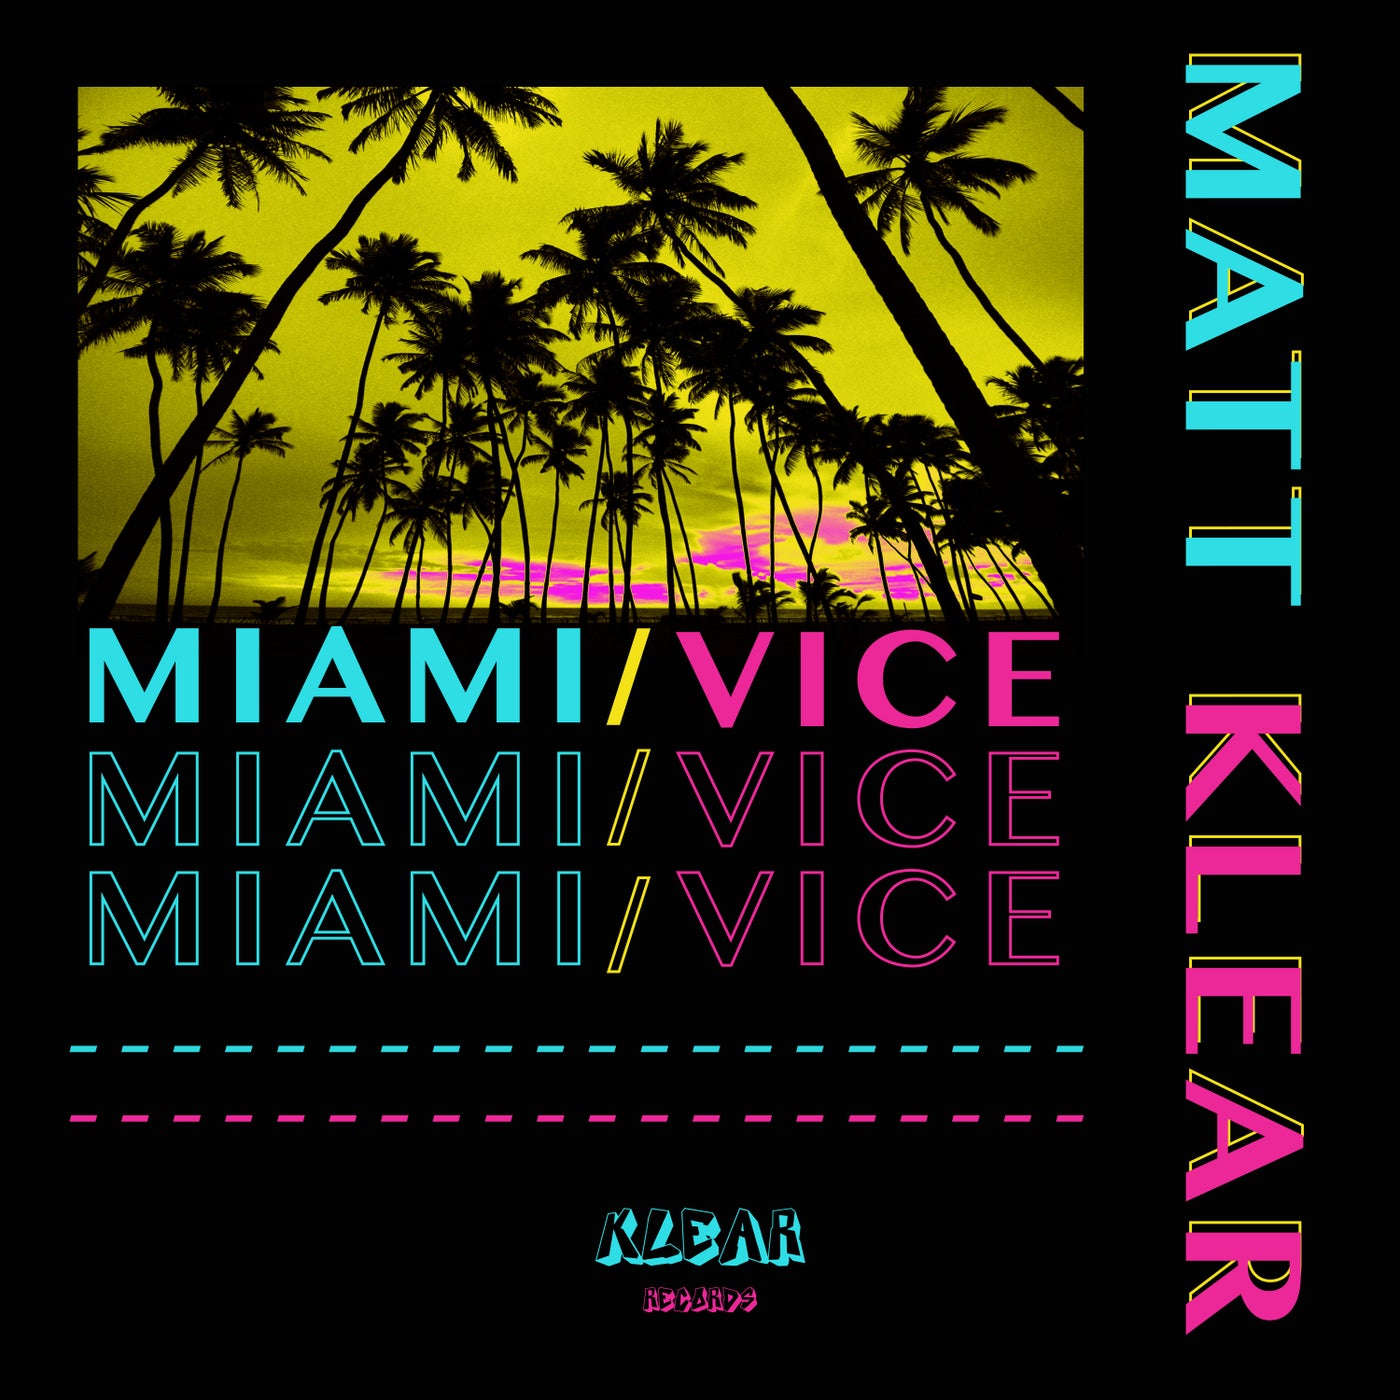 Miami/Vice